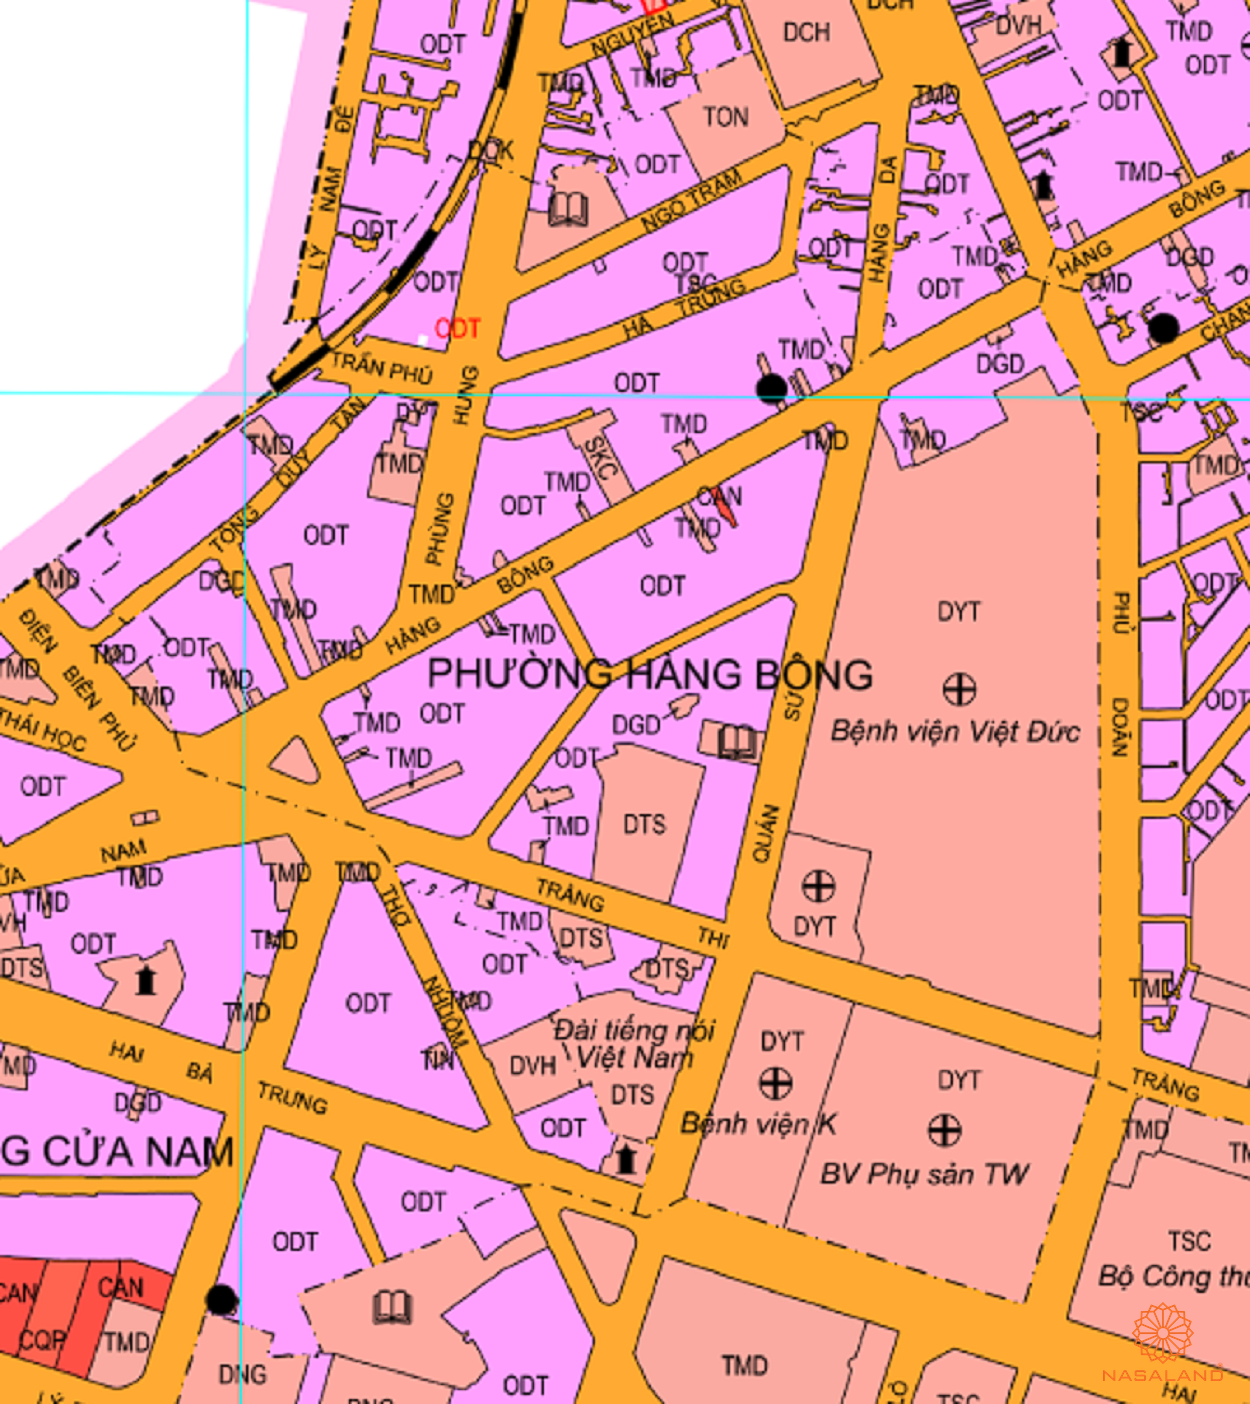 Bản đồ quy hoạch sử dụng đất Phường Hàng Bông theo bản đồ quy hoạch sử dụng đất năm 2020 Quận Hoàn Kiếm, Thành phố Hà Nội.